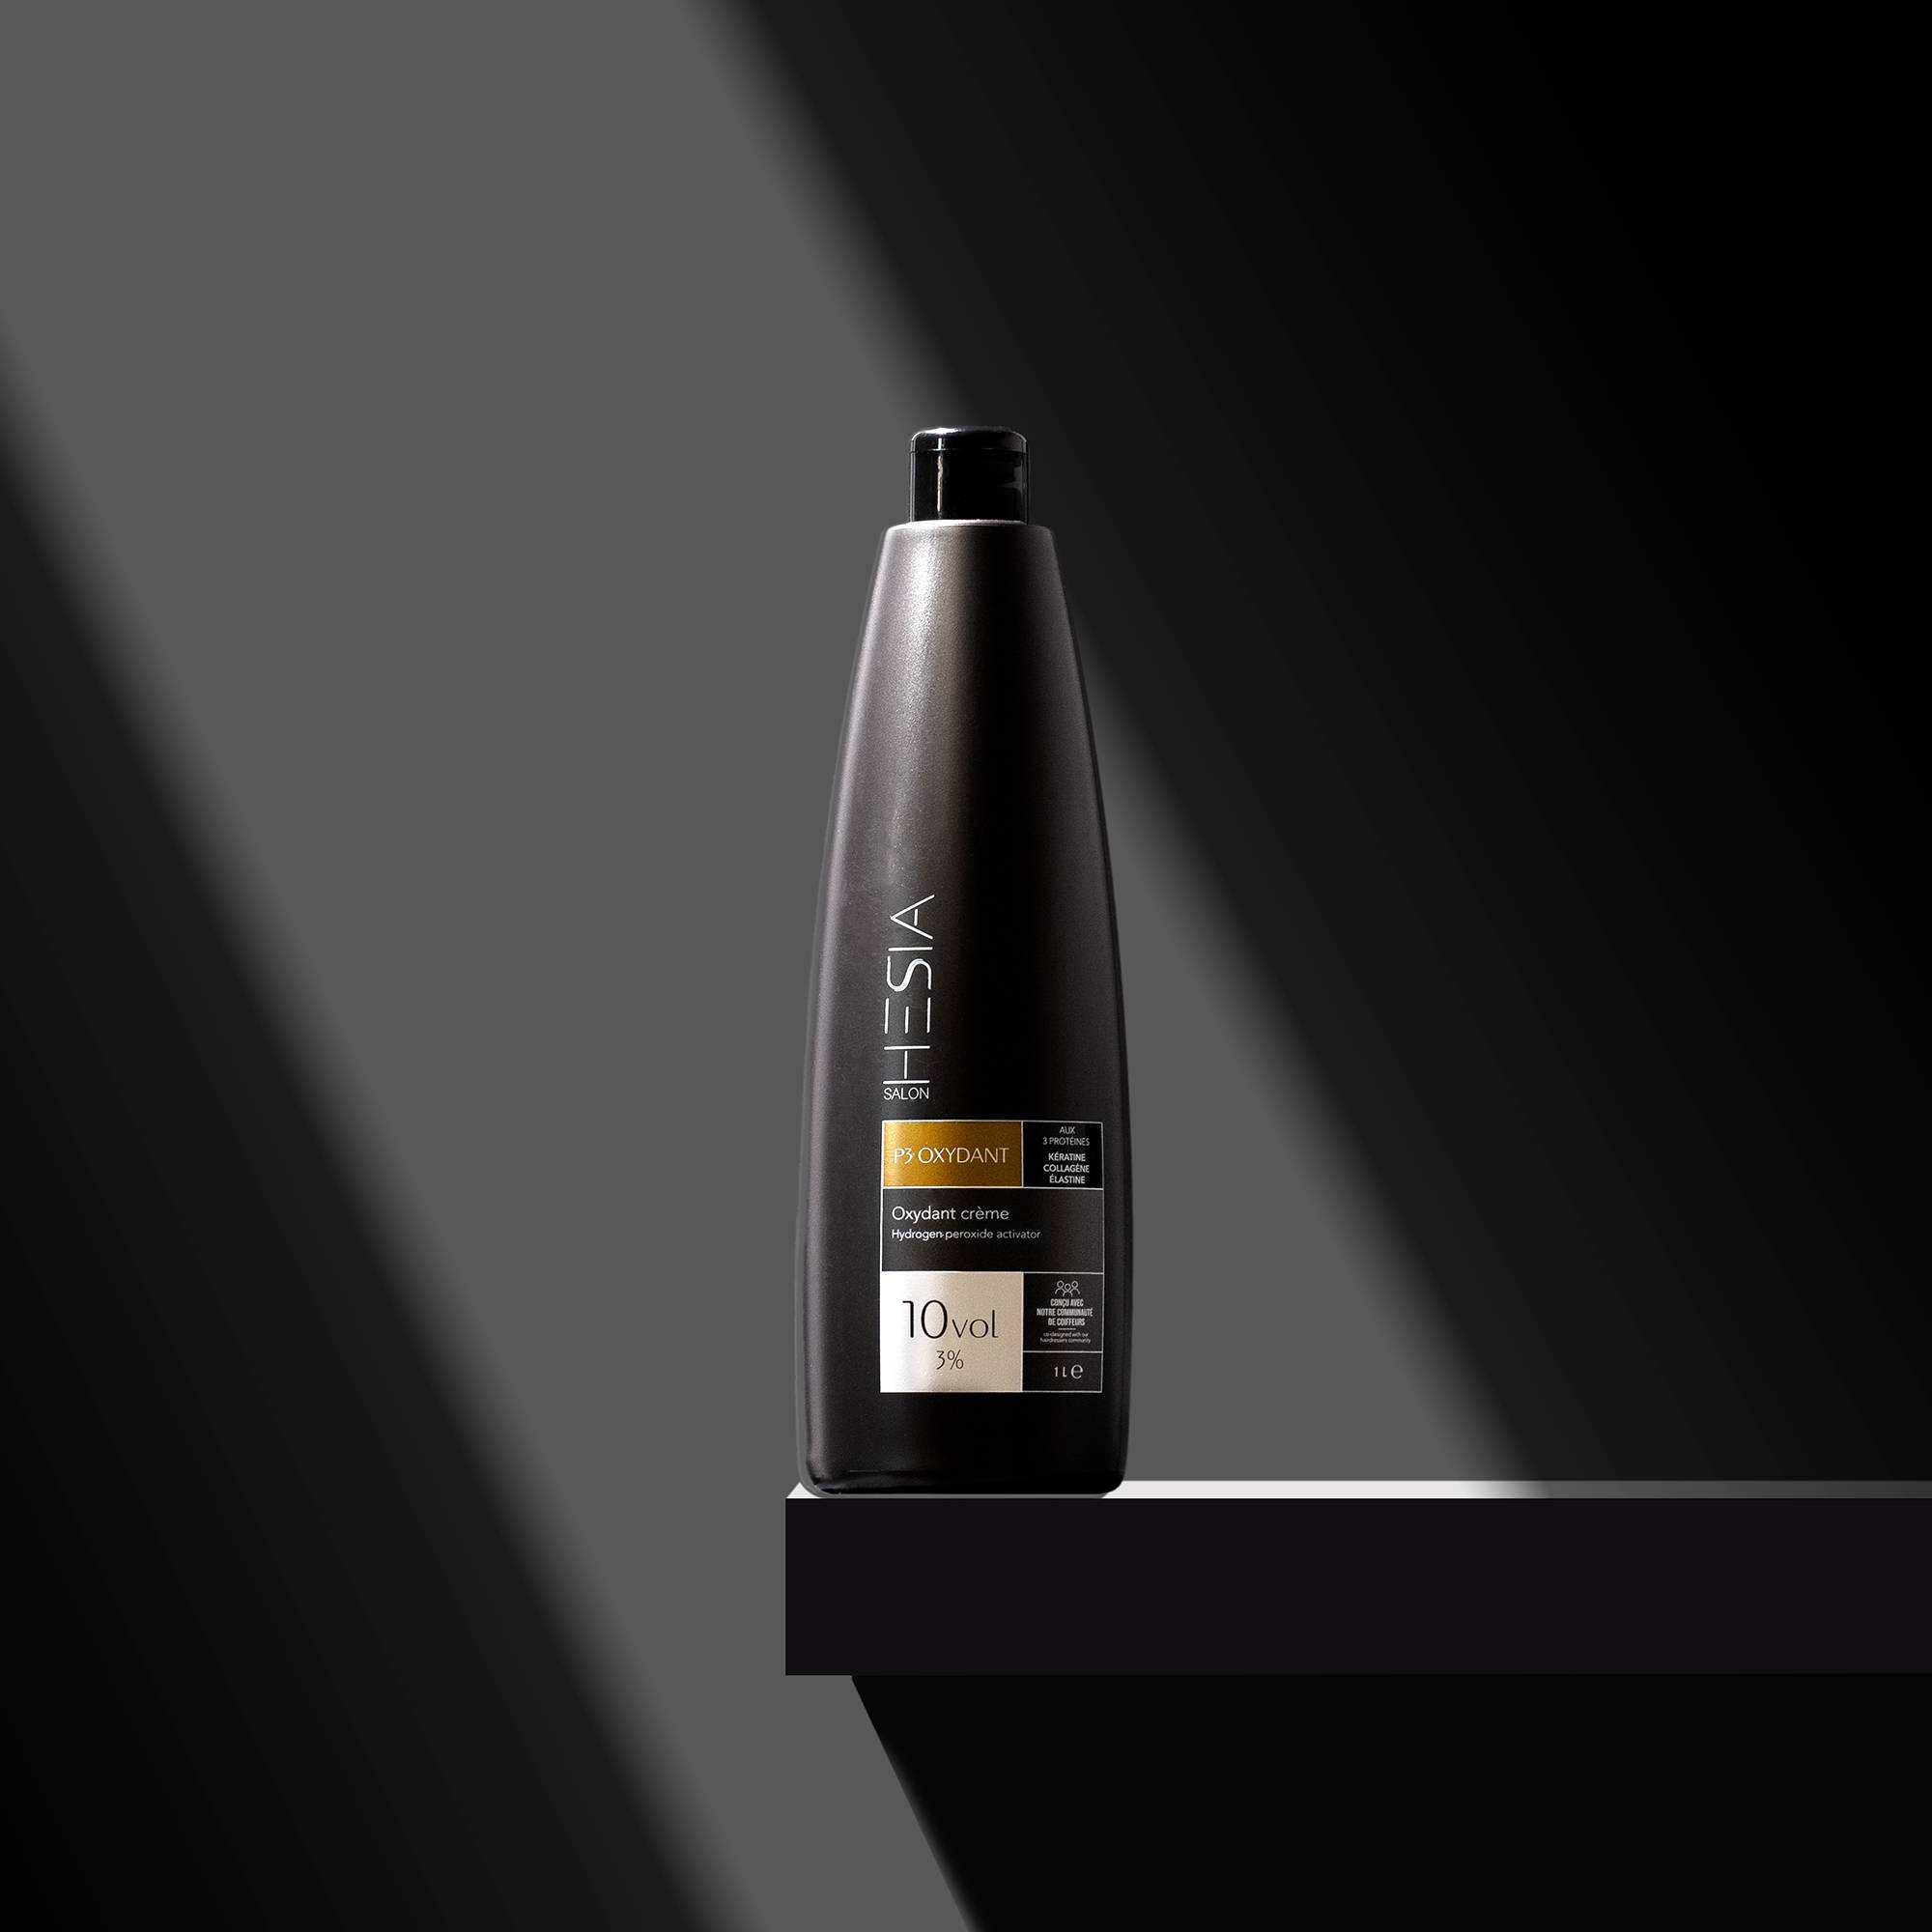 P3 Oxydant crème - 10vol de la marque HESIA Salon Contenance 1000ml - 3